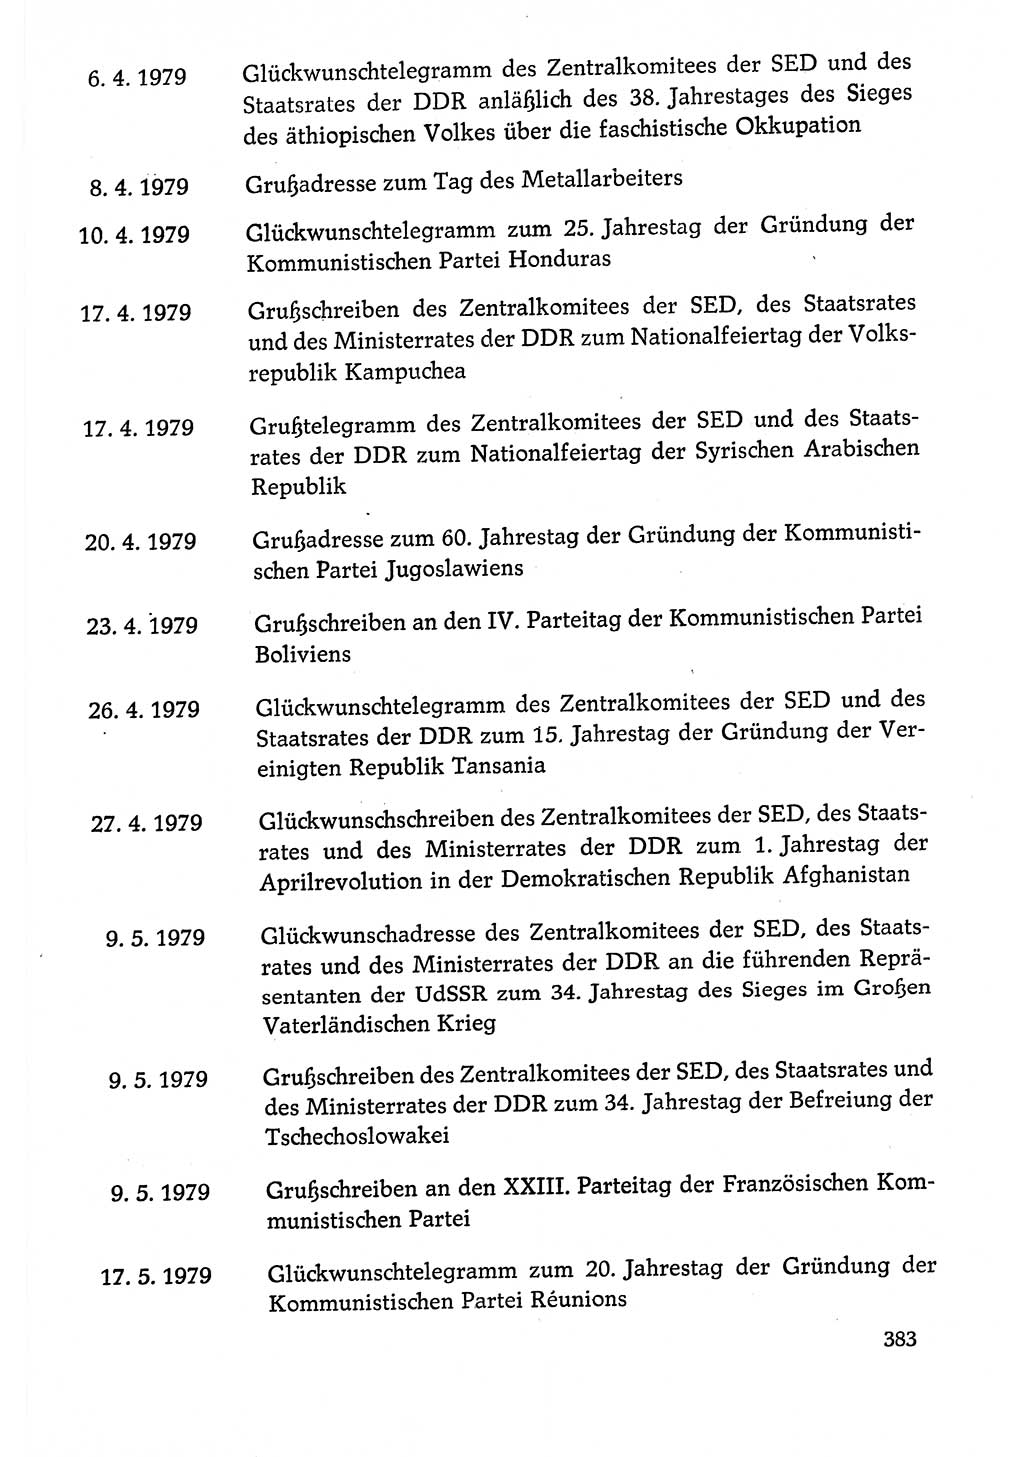 Dokumente der Sozialistischen Einheitspartei Deutschlands (SED) [Deutsche Demokratische Republik (DDR)] 1978-1979, Seite 383 (Dok. SED DDR 1978-1979, S. 383)